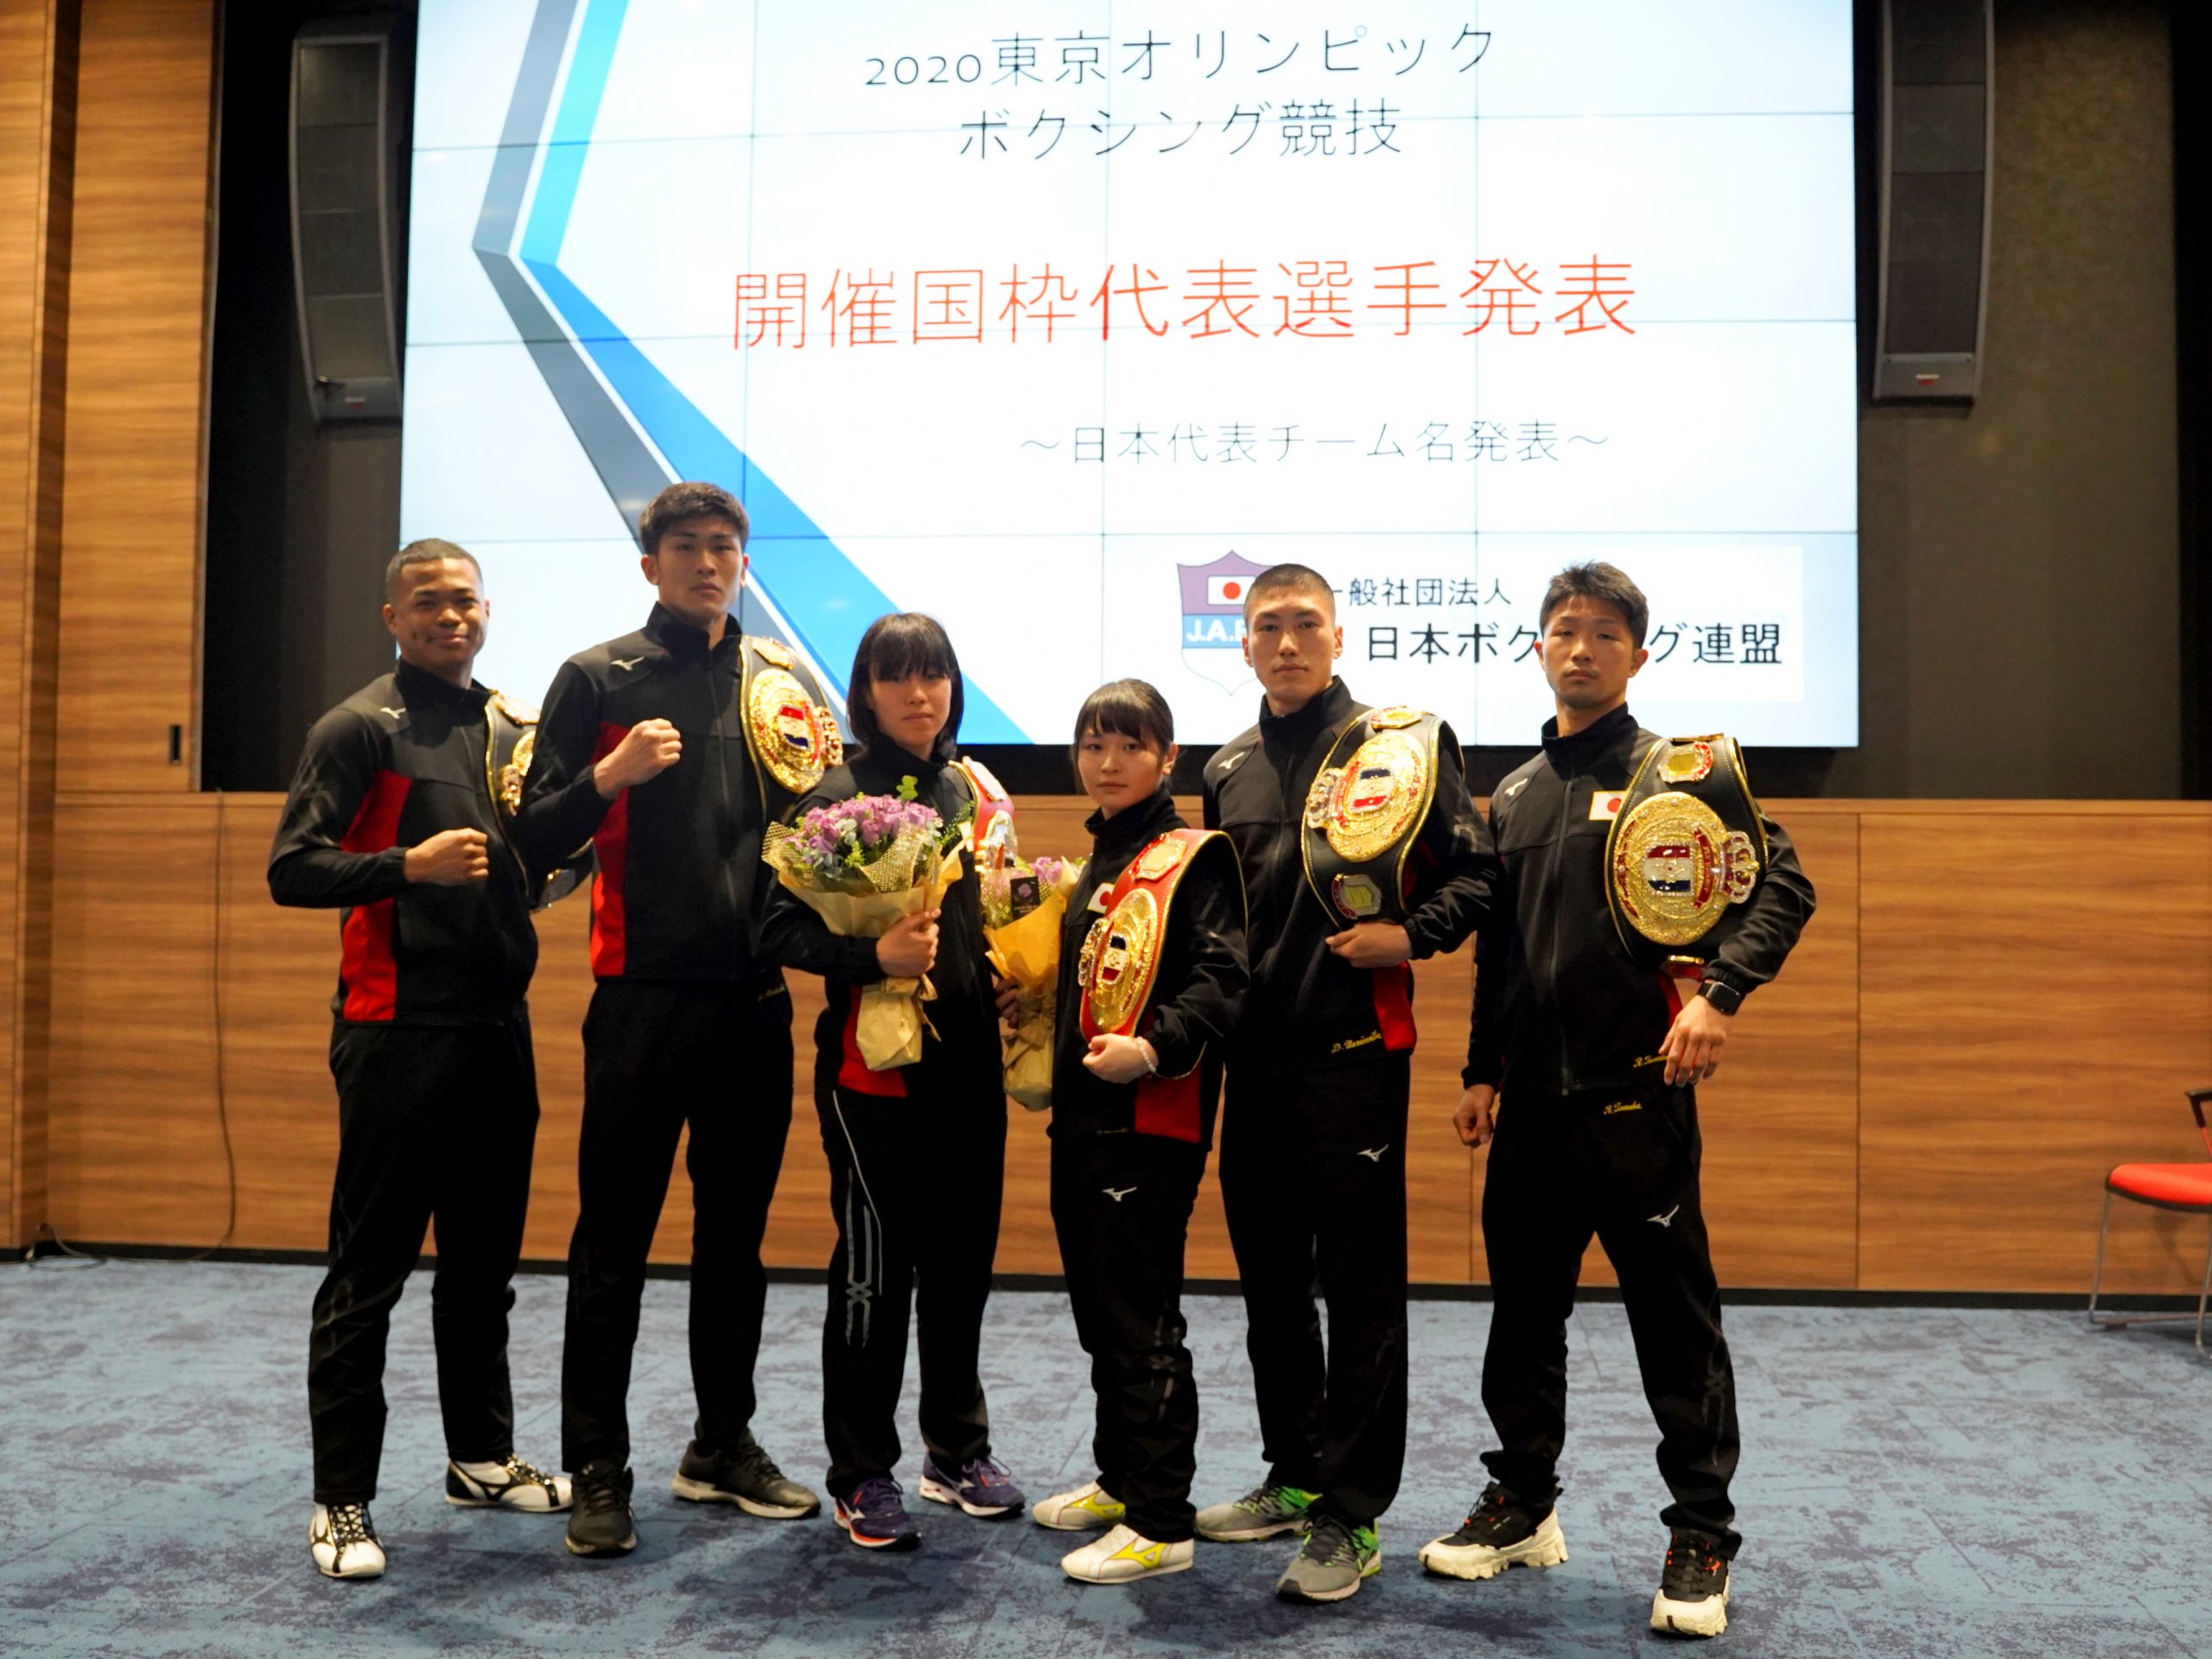 東京五輪 開催国枠には田中亮明 成松大介 森脇唯人を選出 日本ボクシング連盟